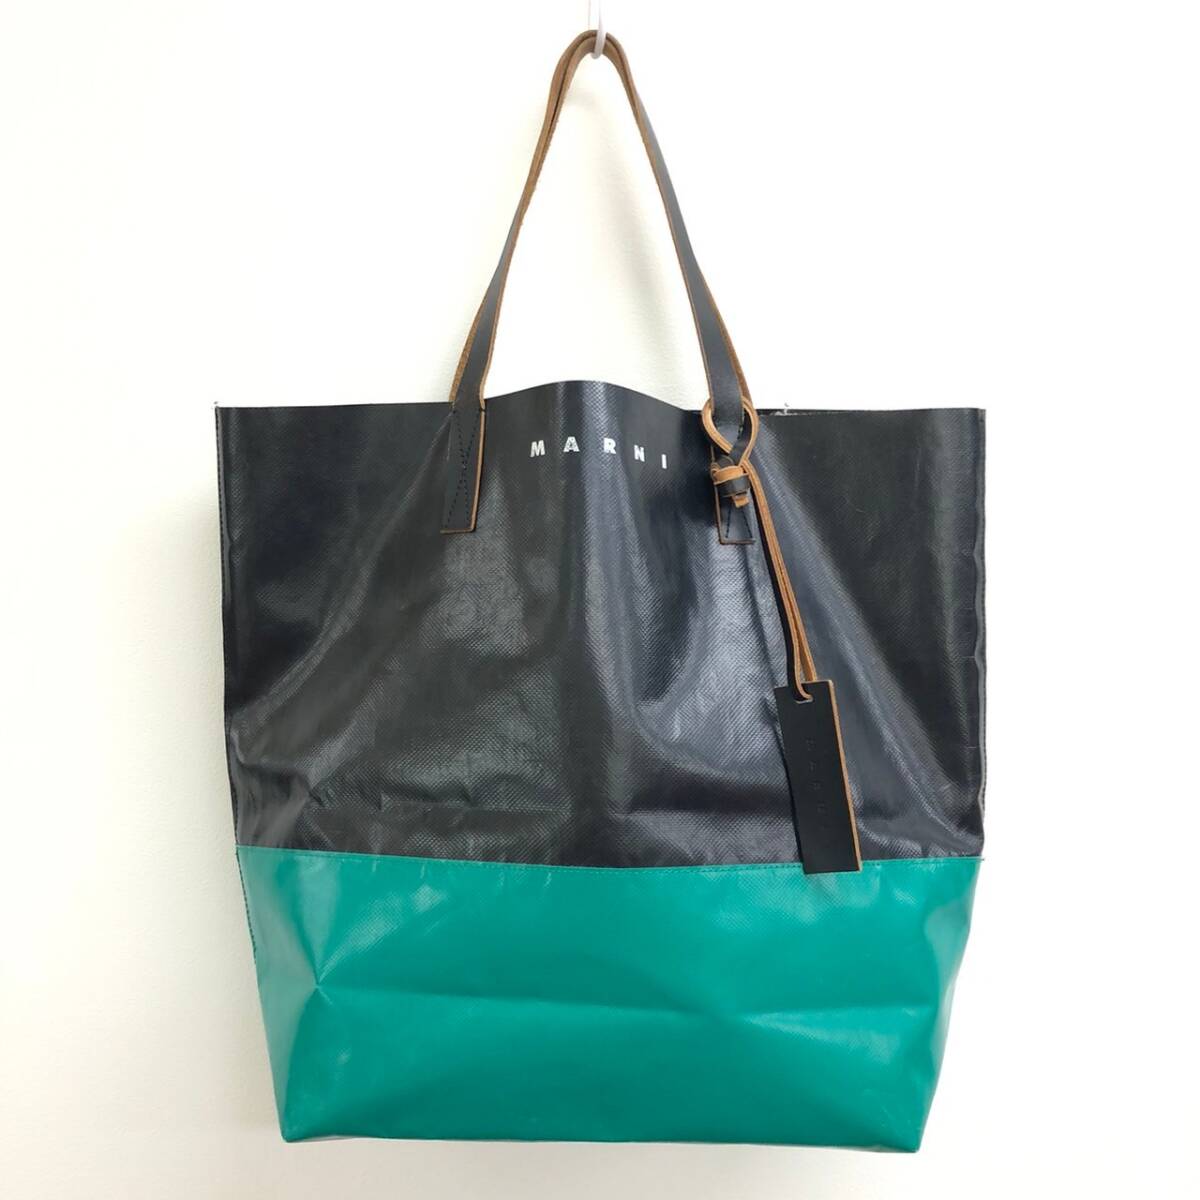 *MARNI большая сумка чёрный × зеленый Marni PVCbai цвет TRIBECA покупка сумка SHMQ0037A0 P3572 Италия производства несколько принятых ставок включение в покупку OK B240315-3